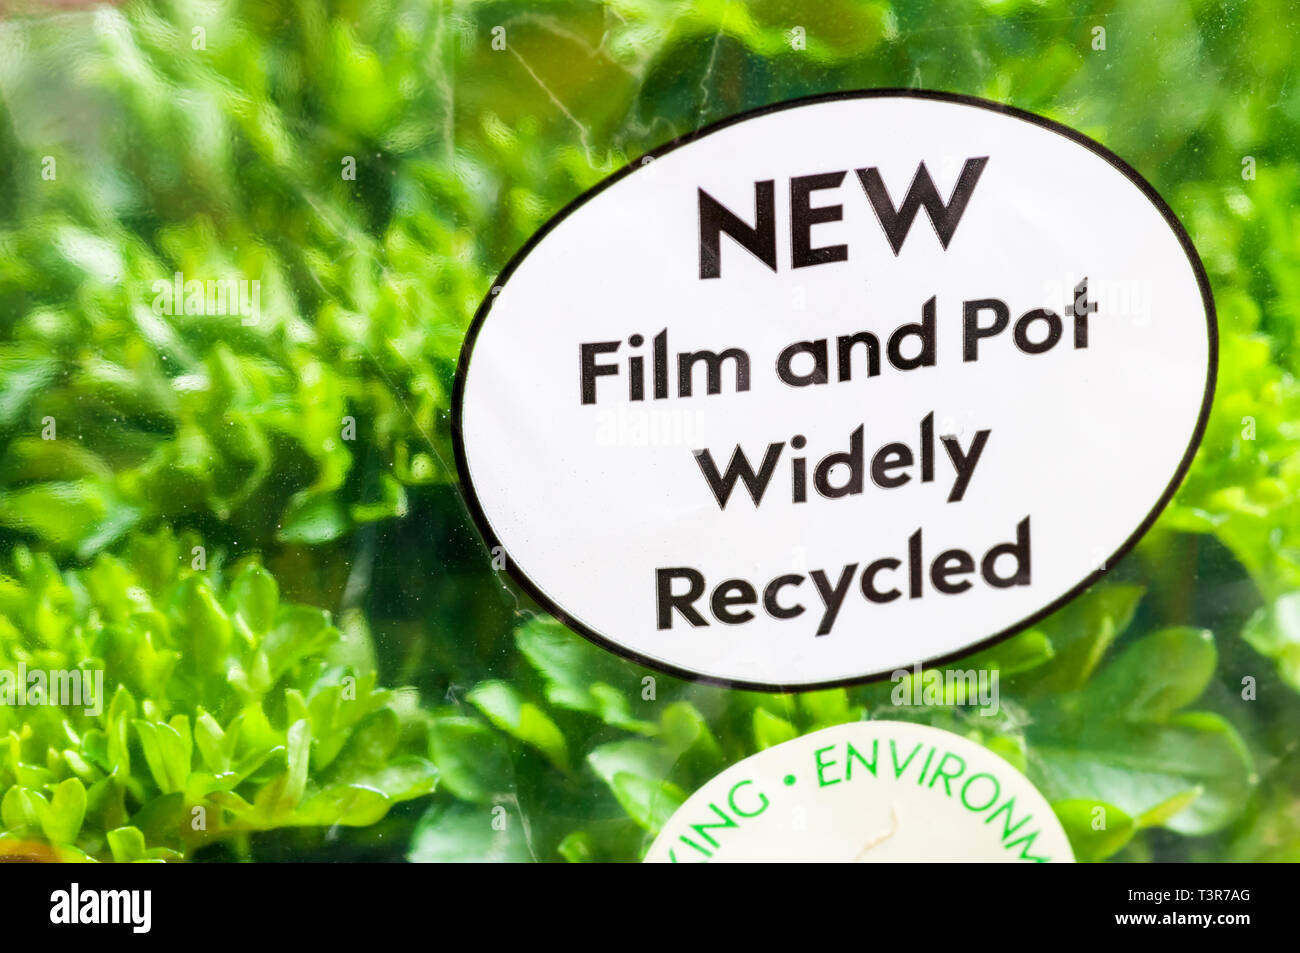 Anweisungen für Recycling auf Topf Curly blätterte Petersilie lesen Film und Topf weit recycelt. Stockfoto